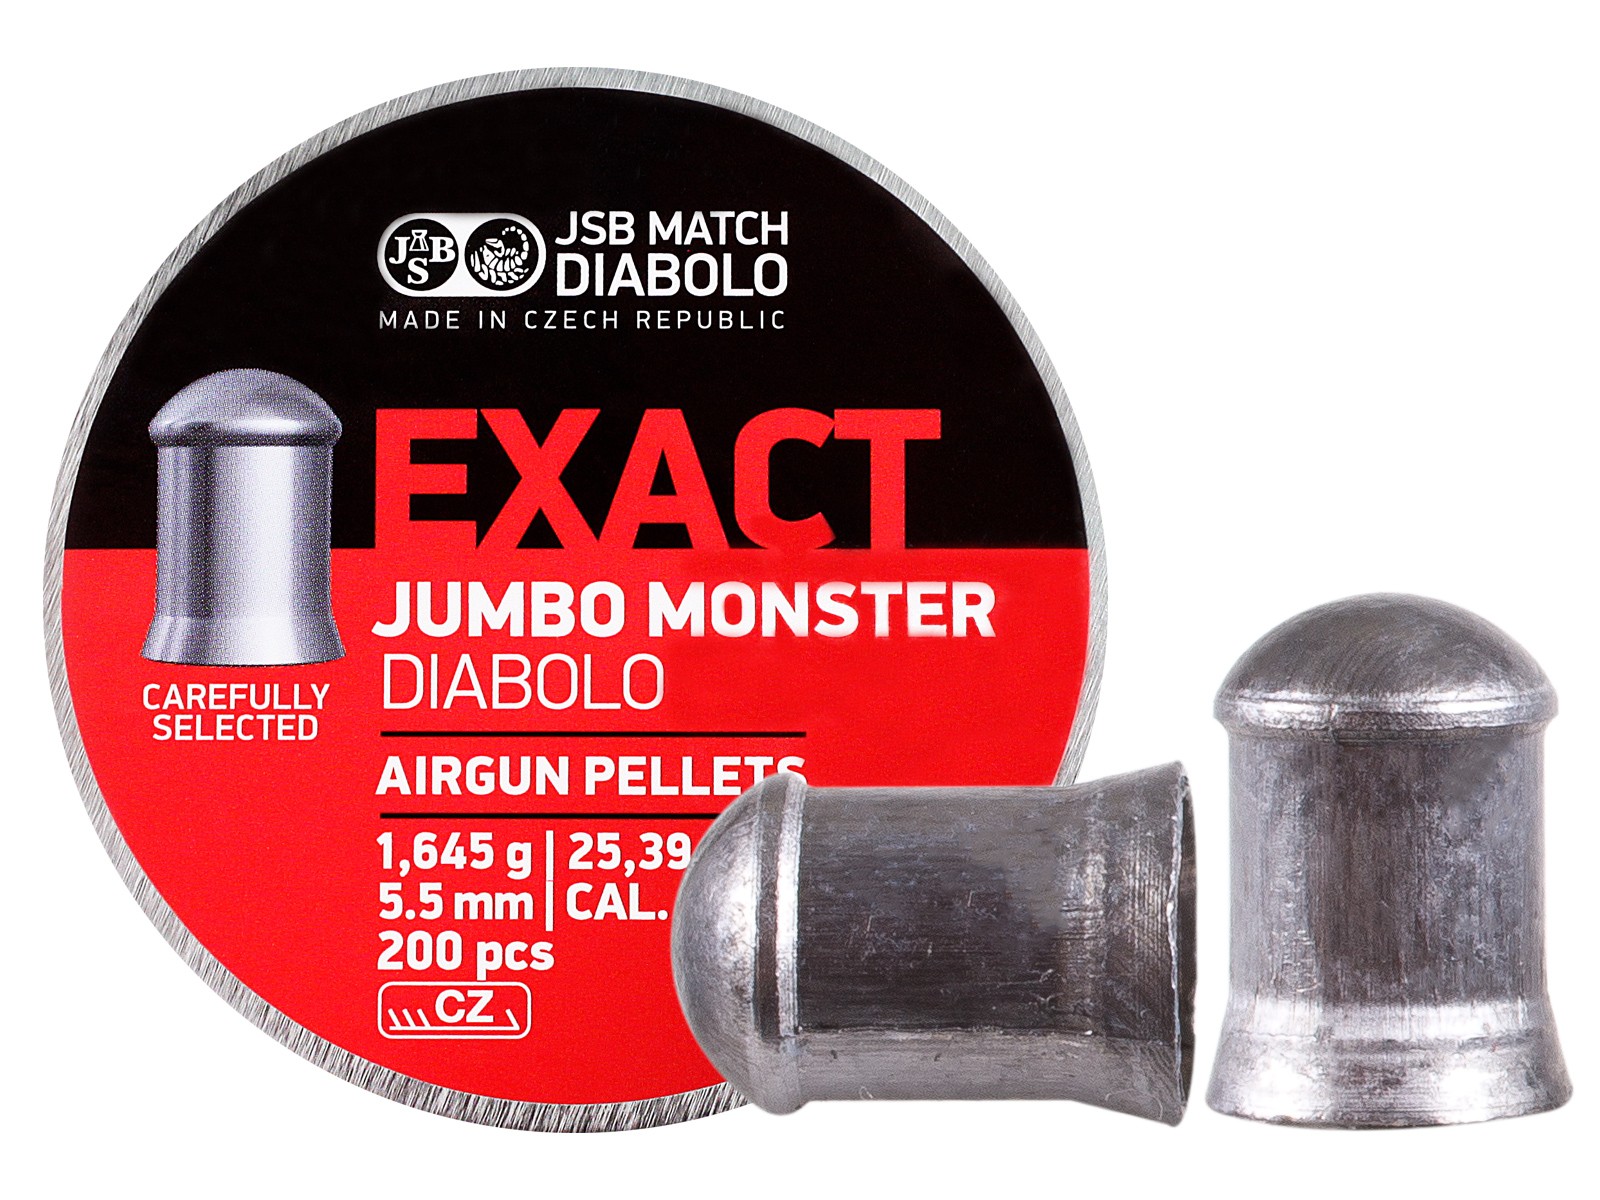 JSB Match Diabolo Exact Jumbo Monster .22 Cal, 25.39 Grains, Domed, 200ct